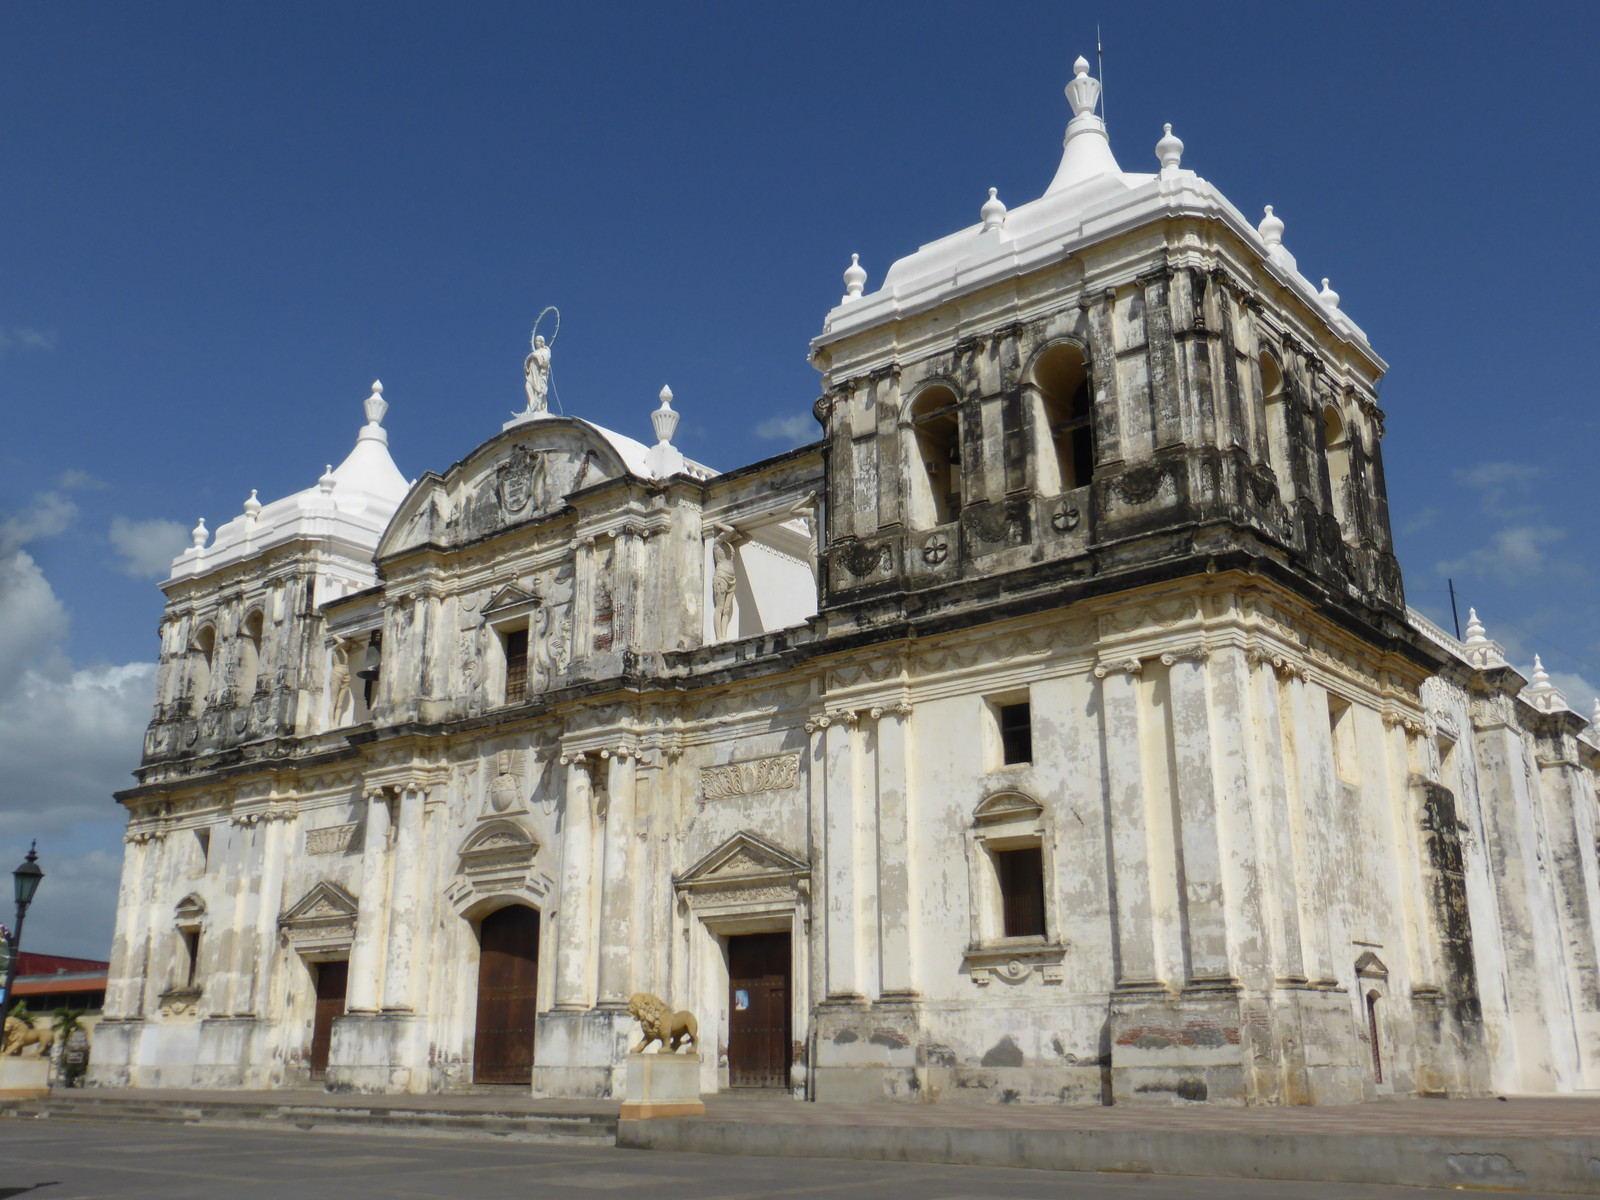 The Basílica de la Ascuncíon